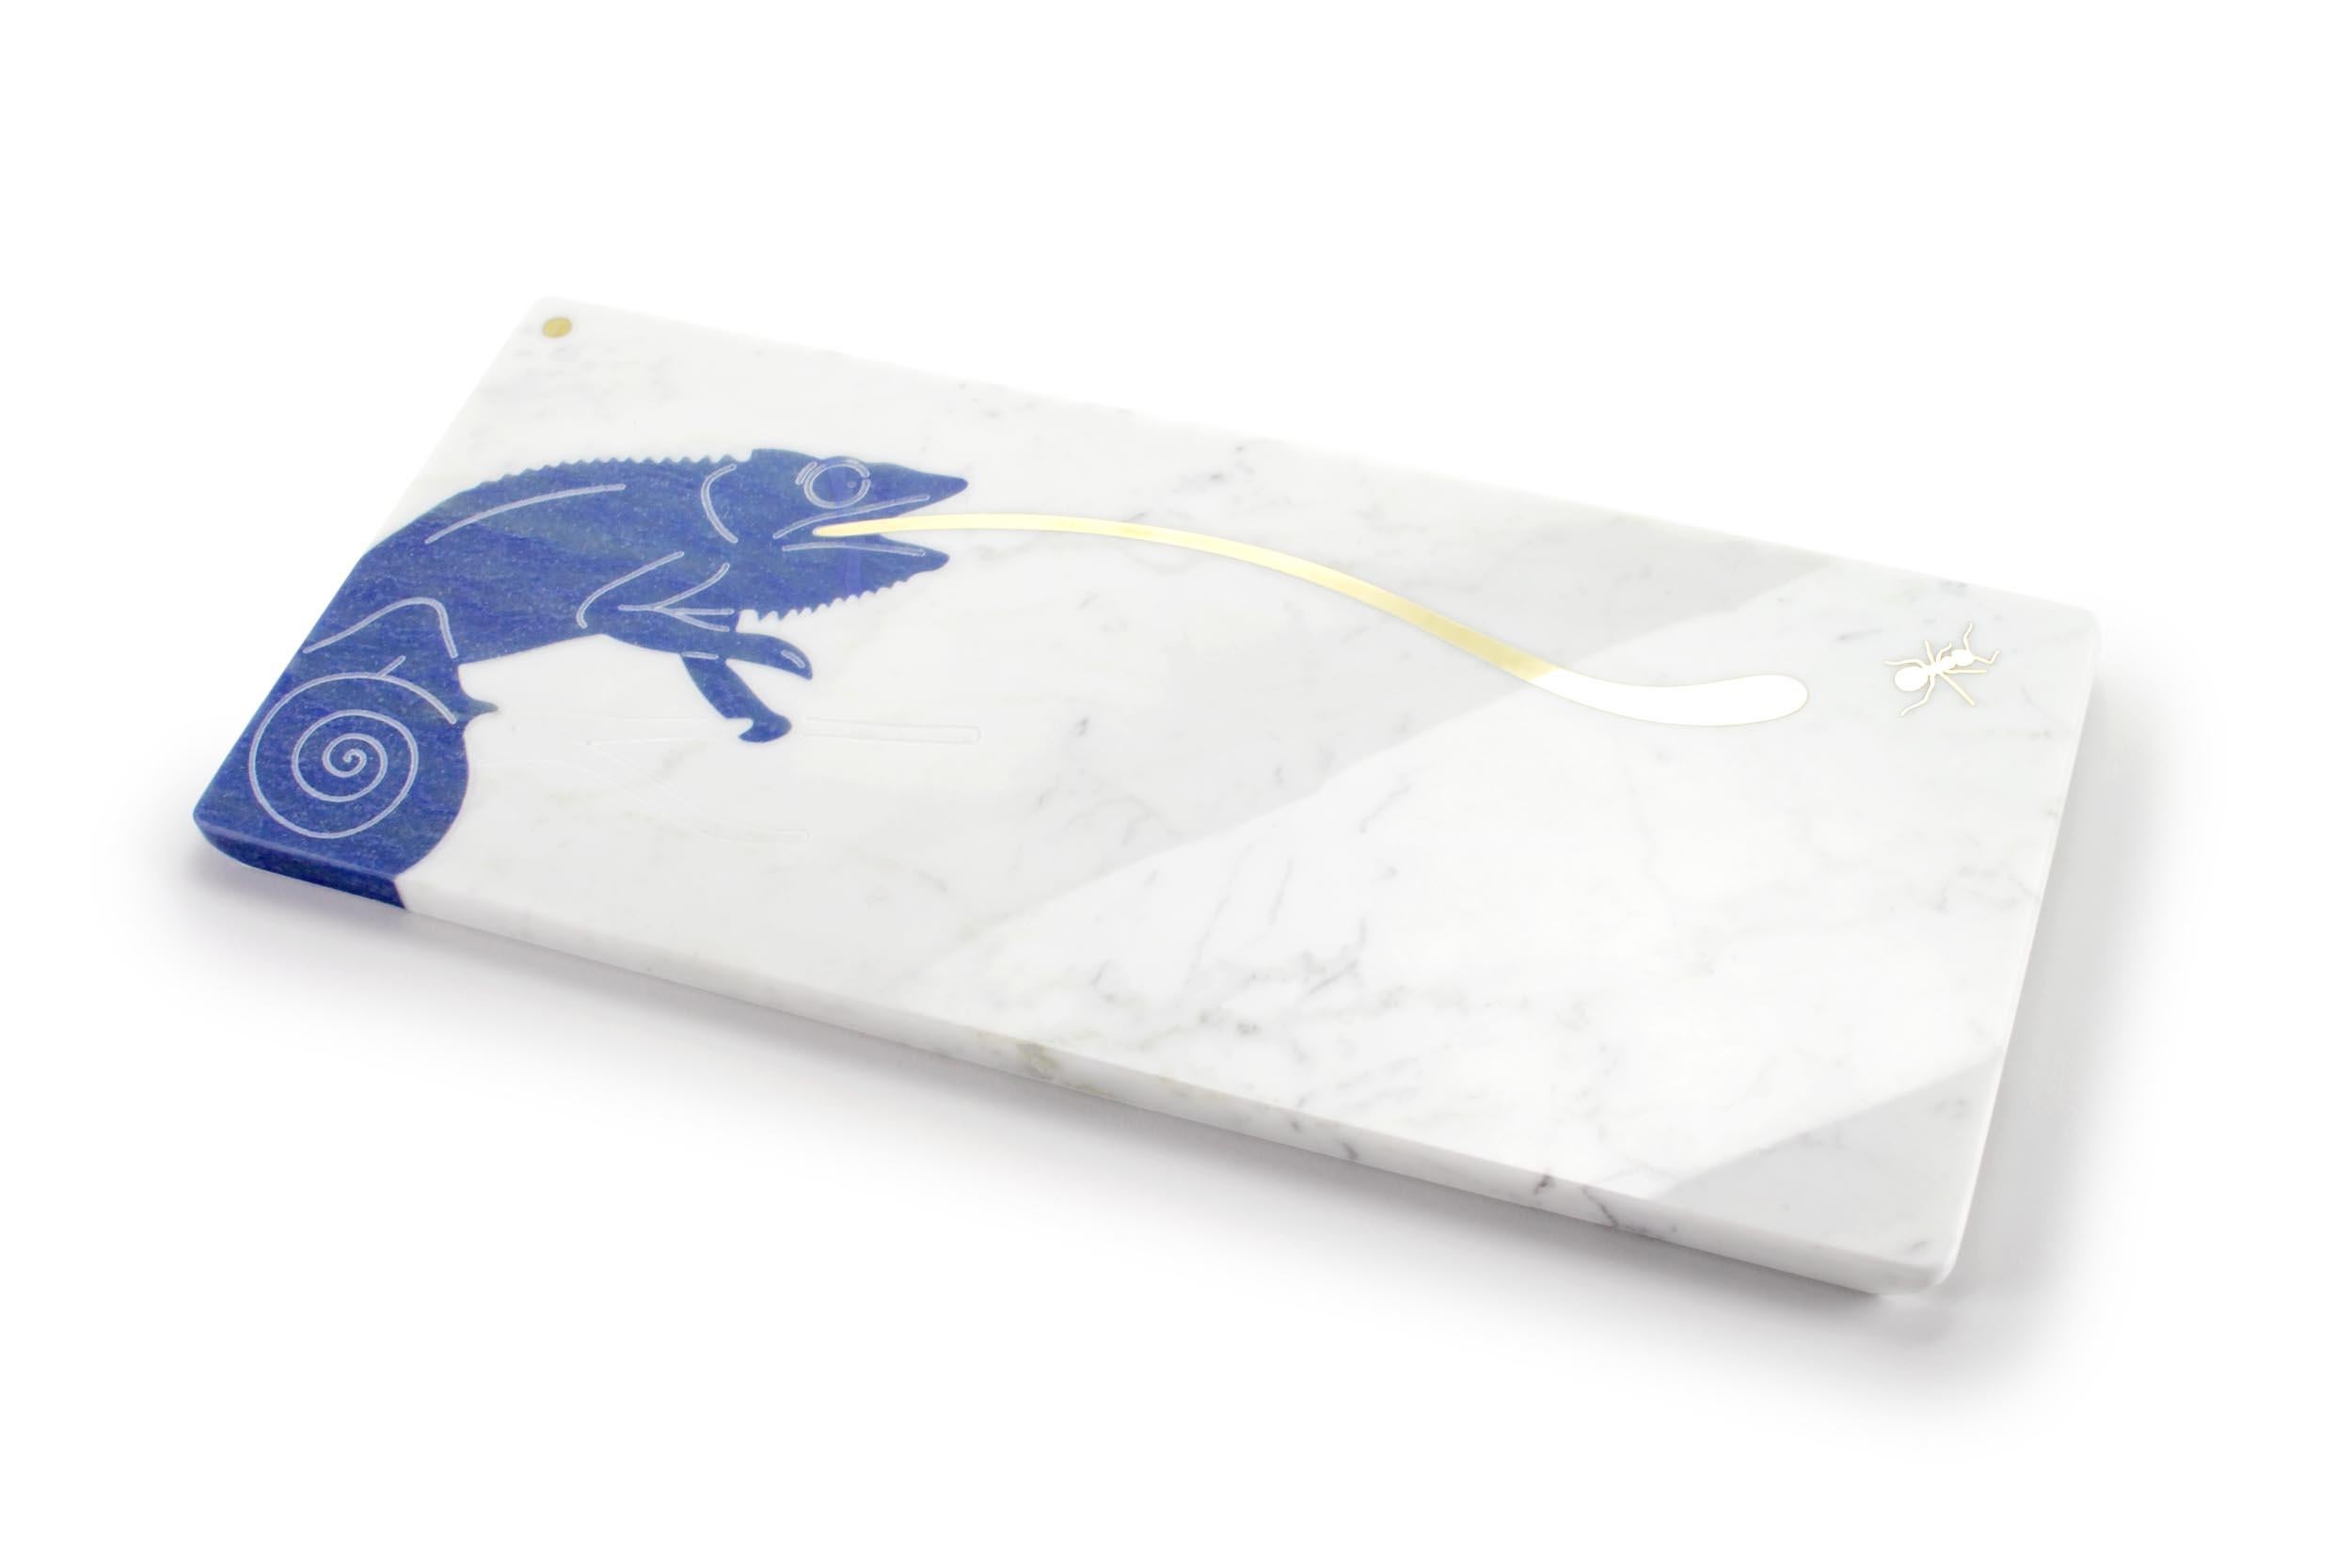 Centre de table / Plat de service en marbre blanc de Carrare avec incrustation en laiton et quartzite semi-précieux Azul Macaubas.
Dimensions : L 45, l 20,5, H 1,5 cm
Matériau : Marbre blanc de Carrare, Azul Macaubas, laiton brossé.

Pieruga est